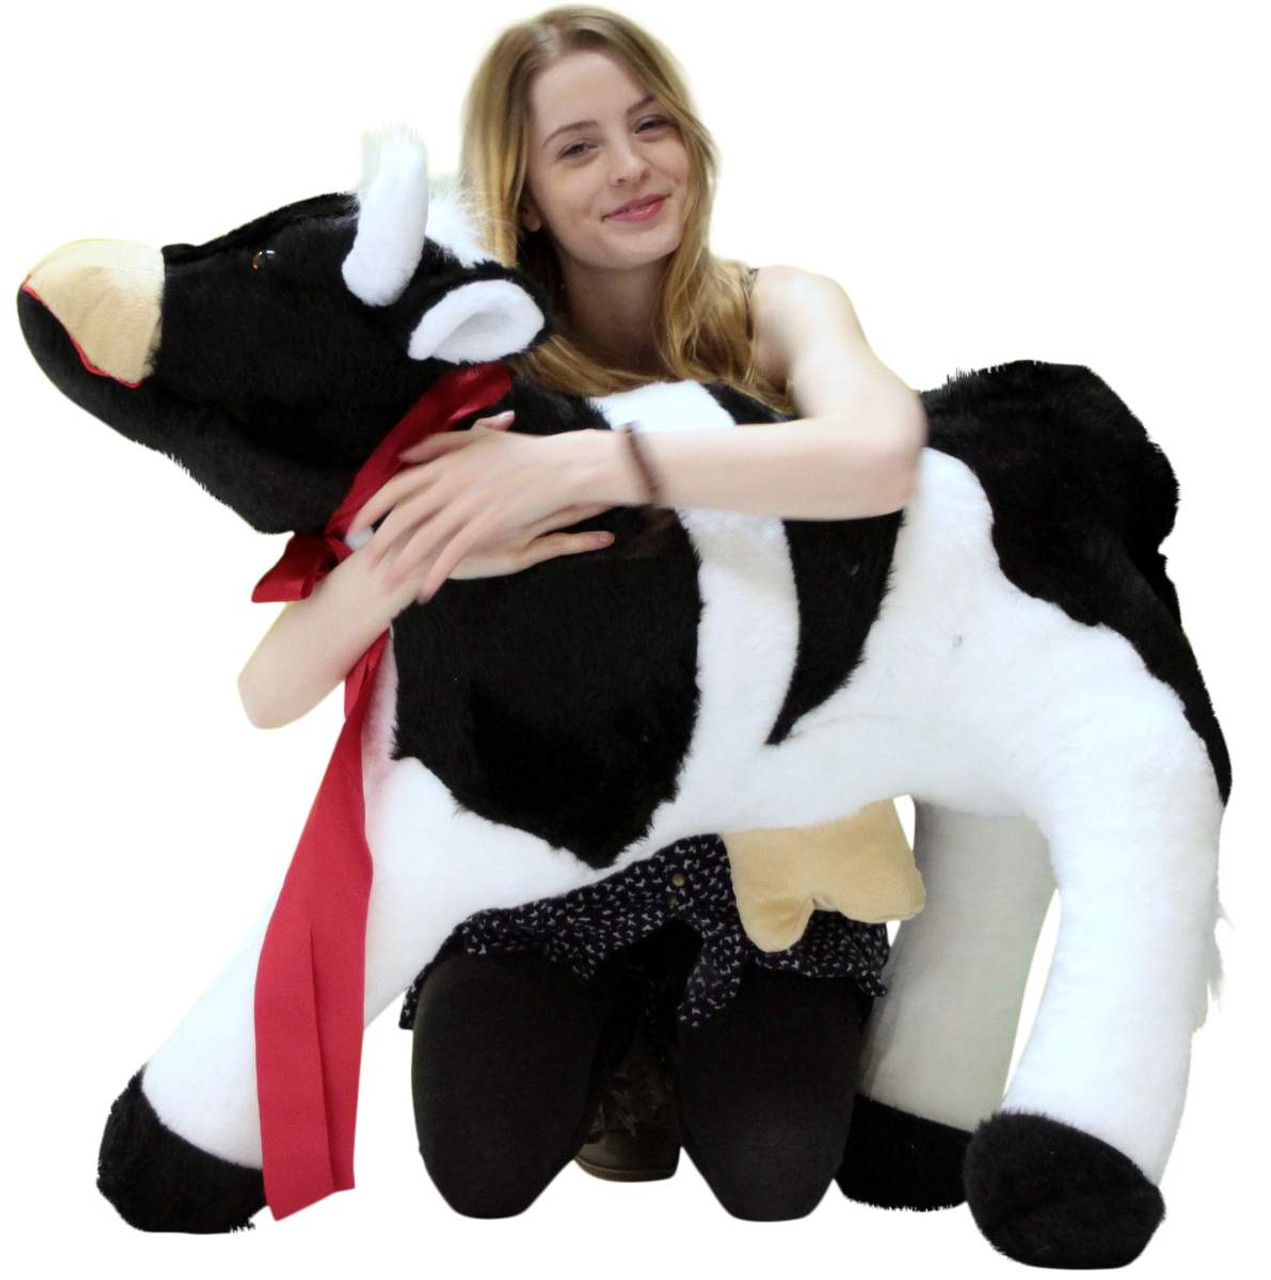 giant plush cow